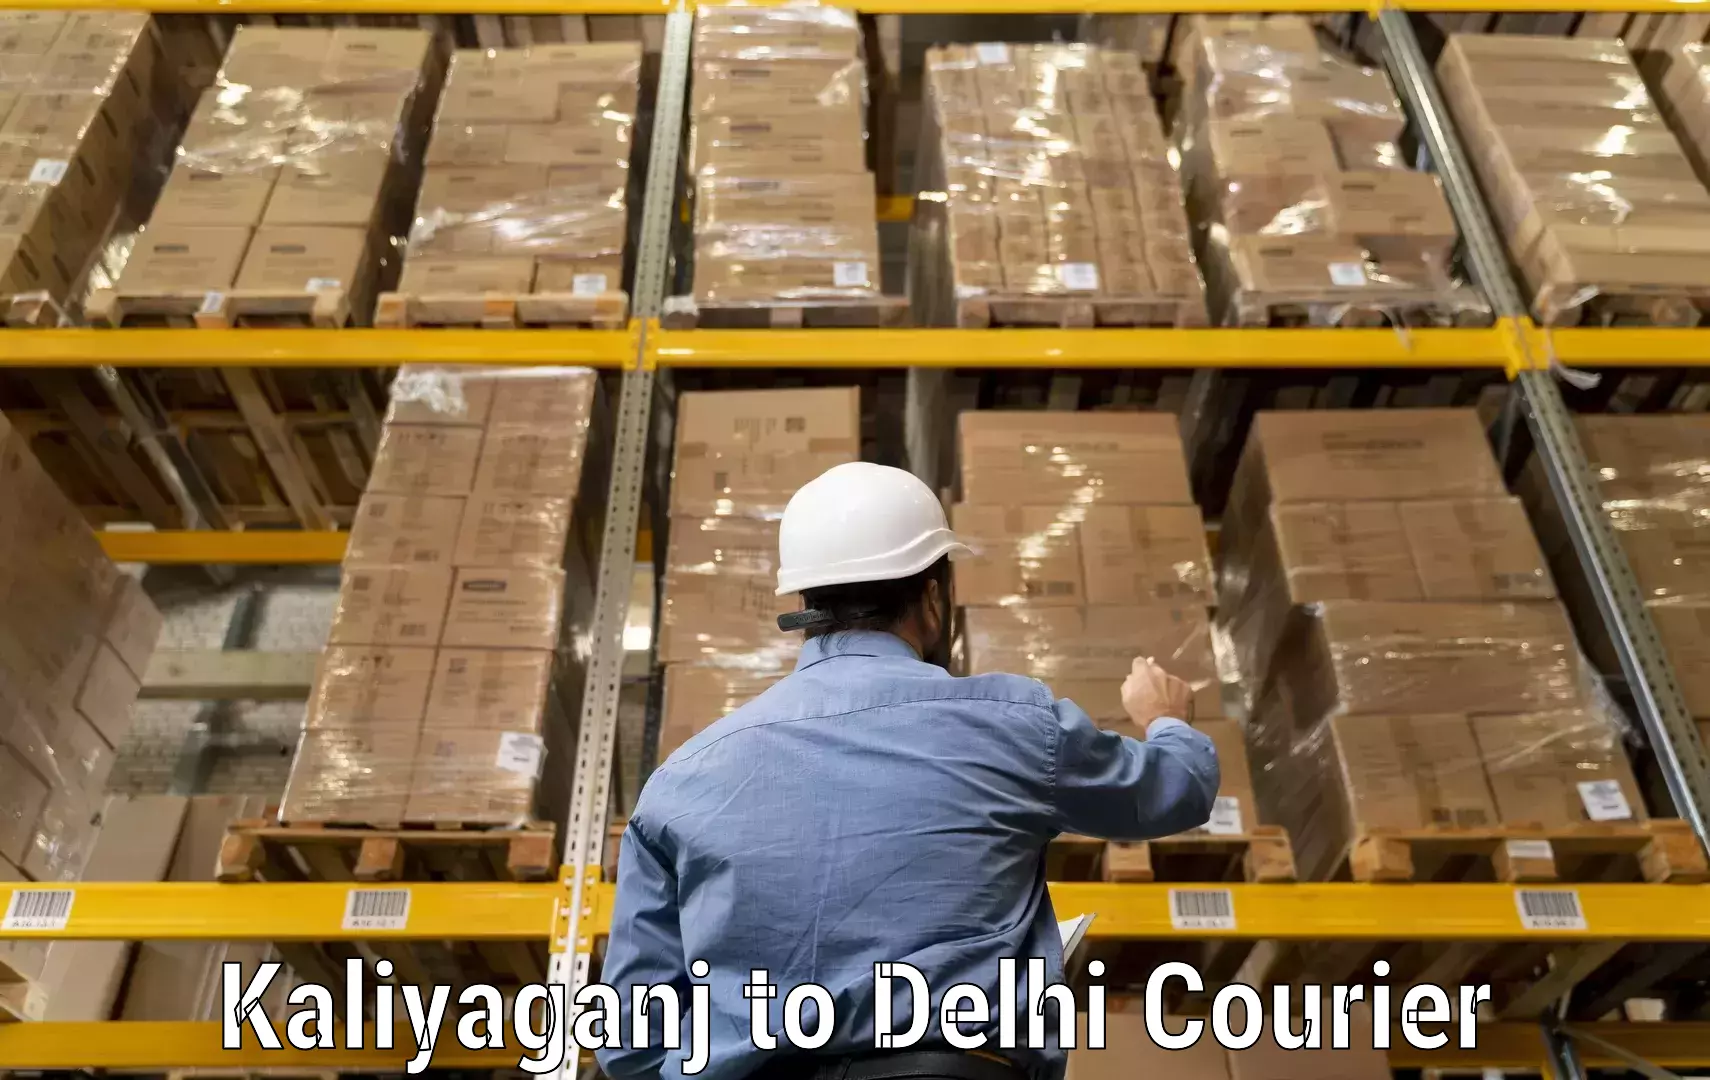 Reliable parcel services Kaliyaganj to Jamia Hamdard New Delhi